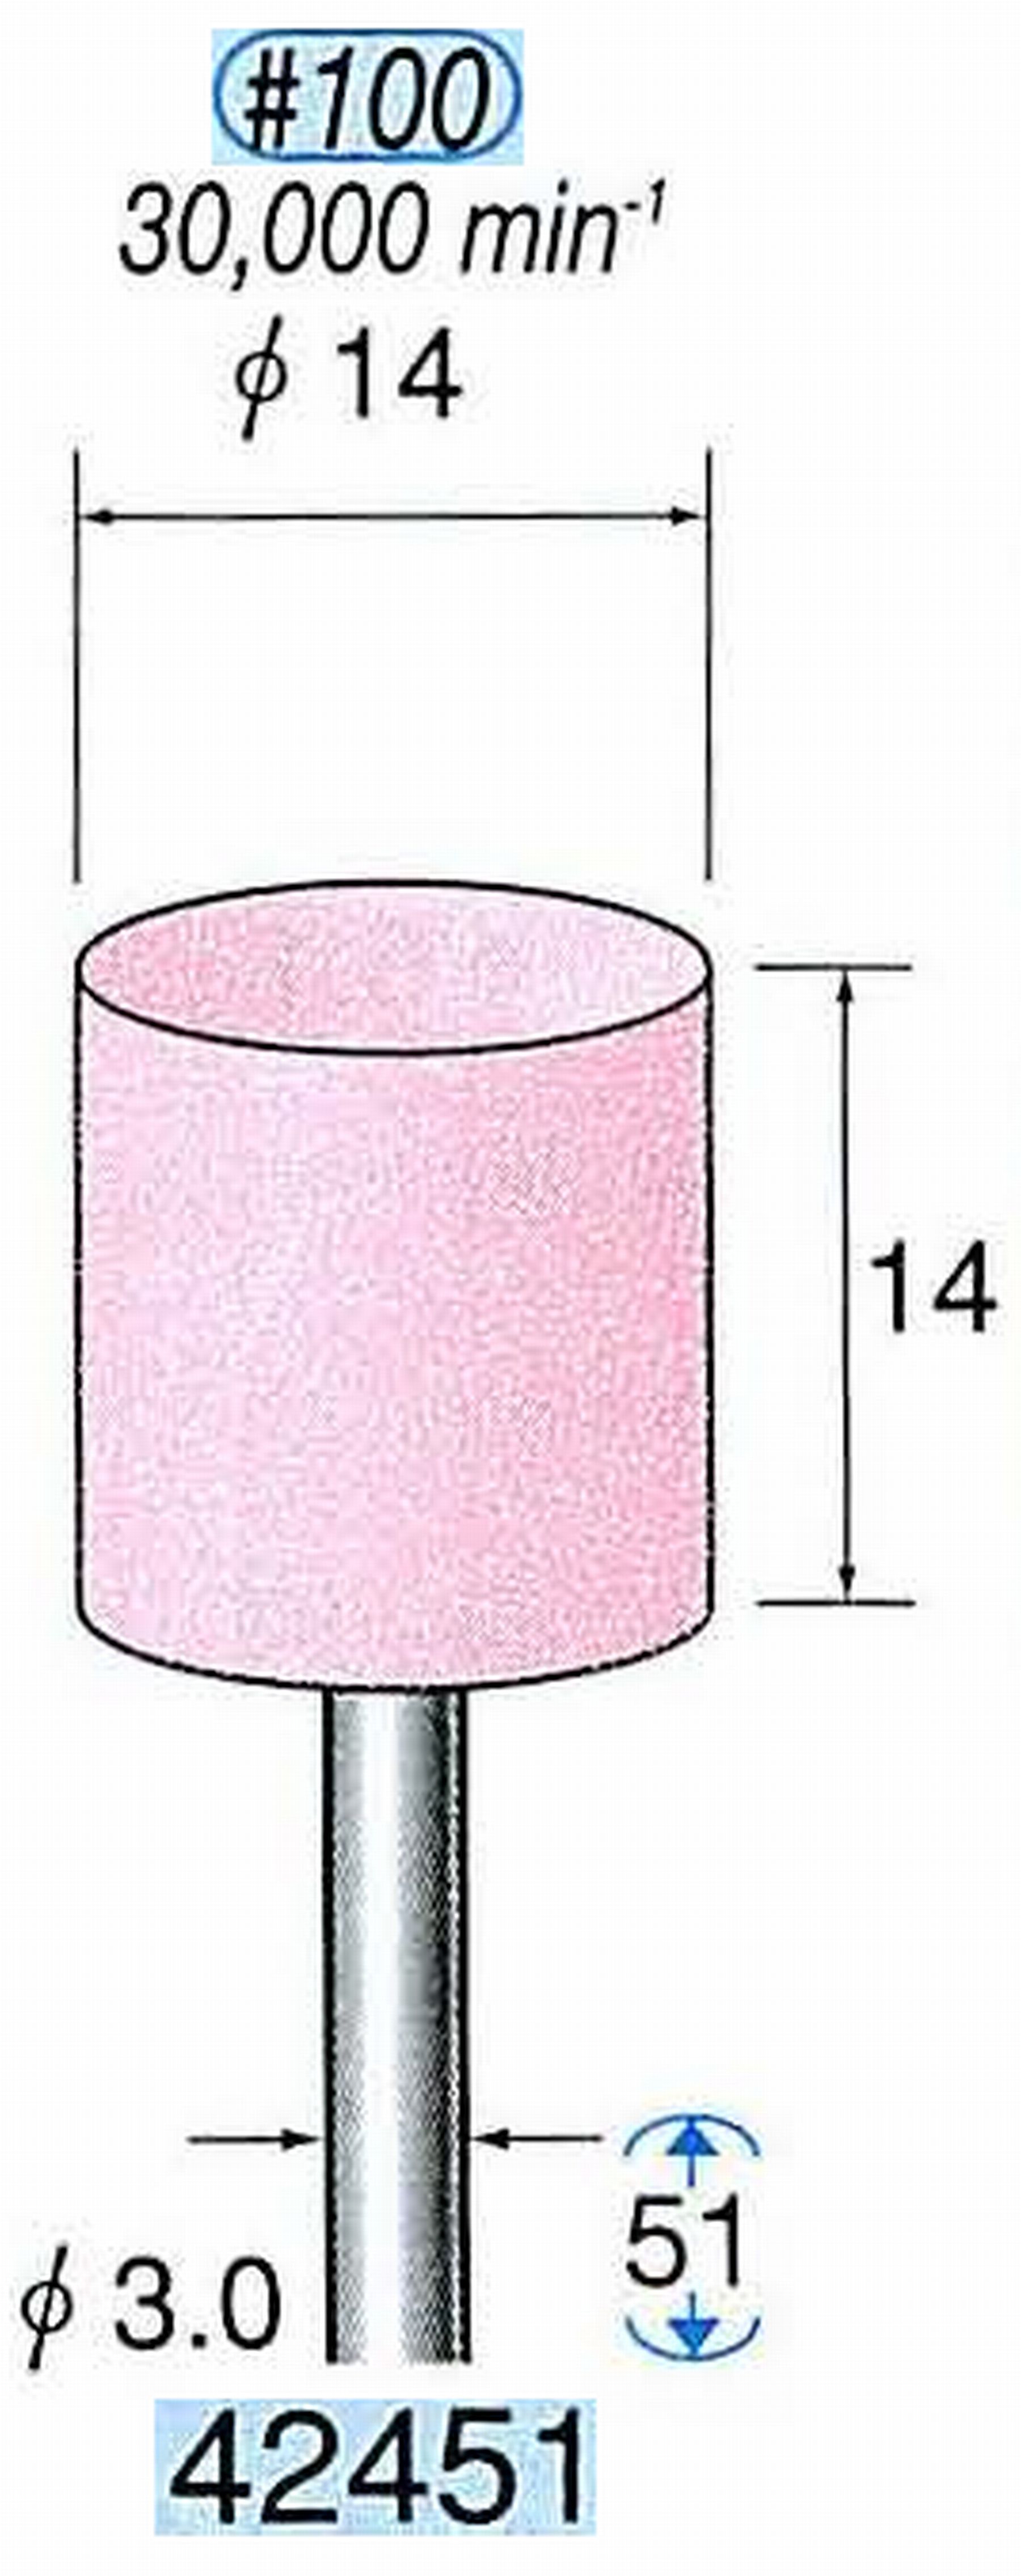 ナカニシ/NAKANISHI 軸付砥石(WA砥粒) 一般研削用 軸径(シャンク) φ3.0mm 42451